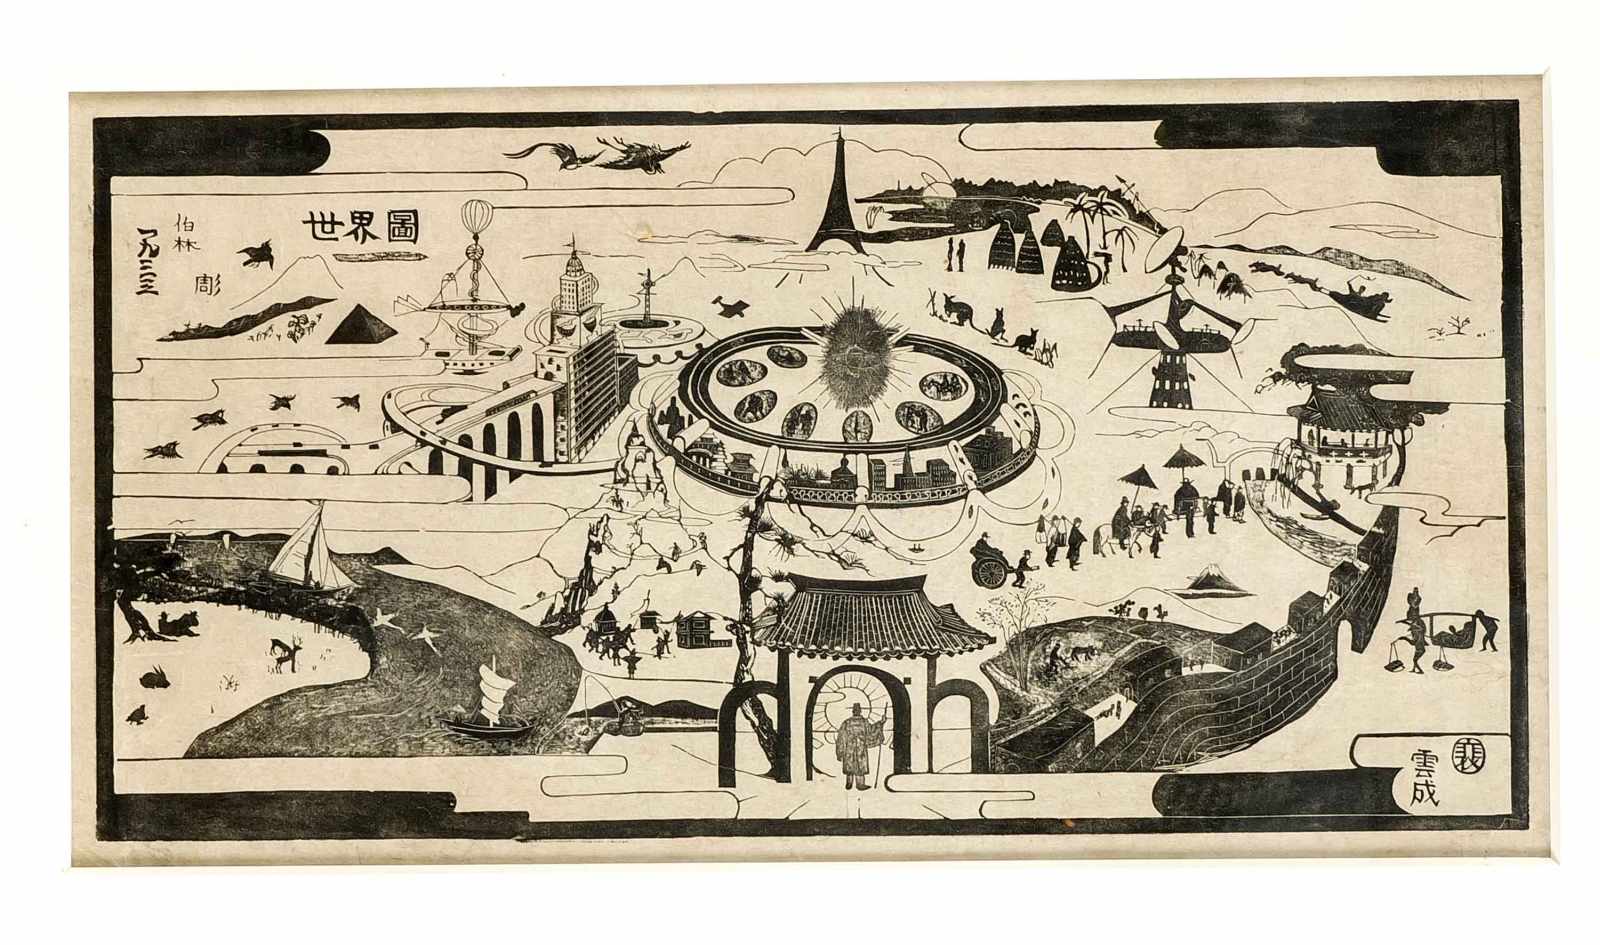 Chinesischer Grafiker 2. H. 20. Jh., surrealistische Komposition einer futuristischen Stadt mit